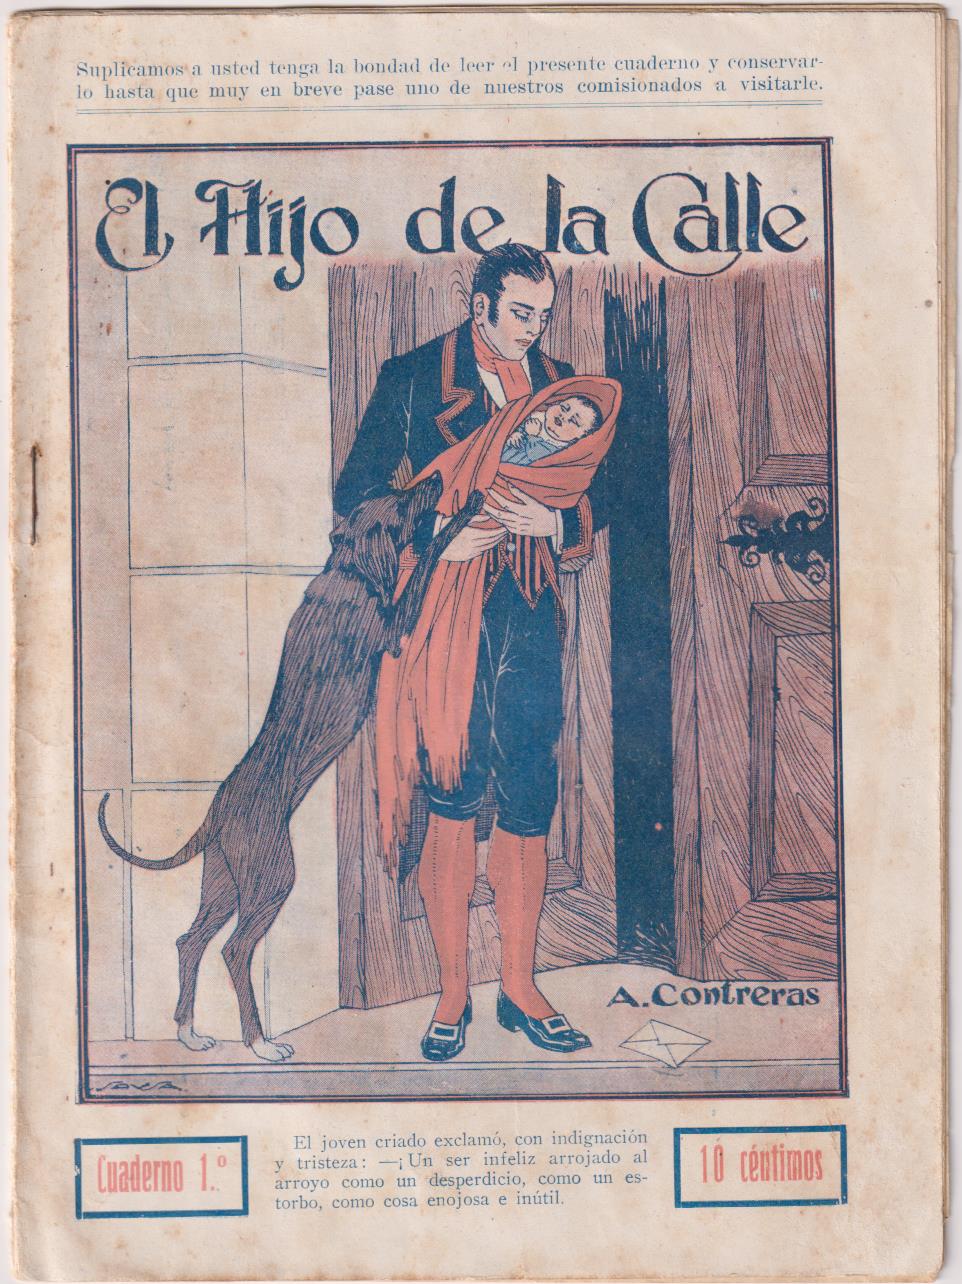 El Hijo de la Calle 1º por A. Contreras. Miguel Albero Editor, Madrid 1926